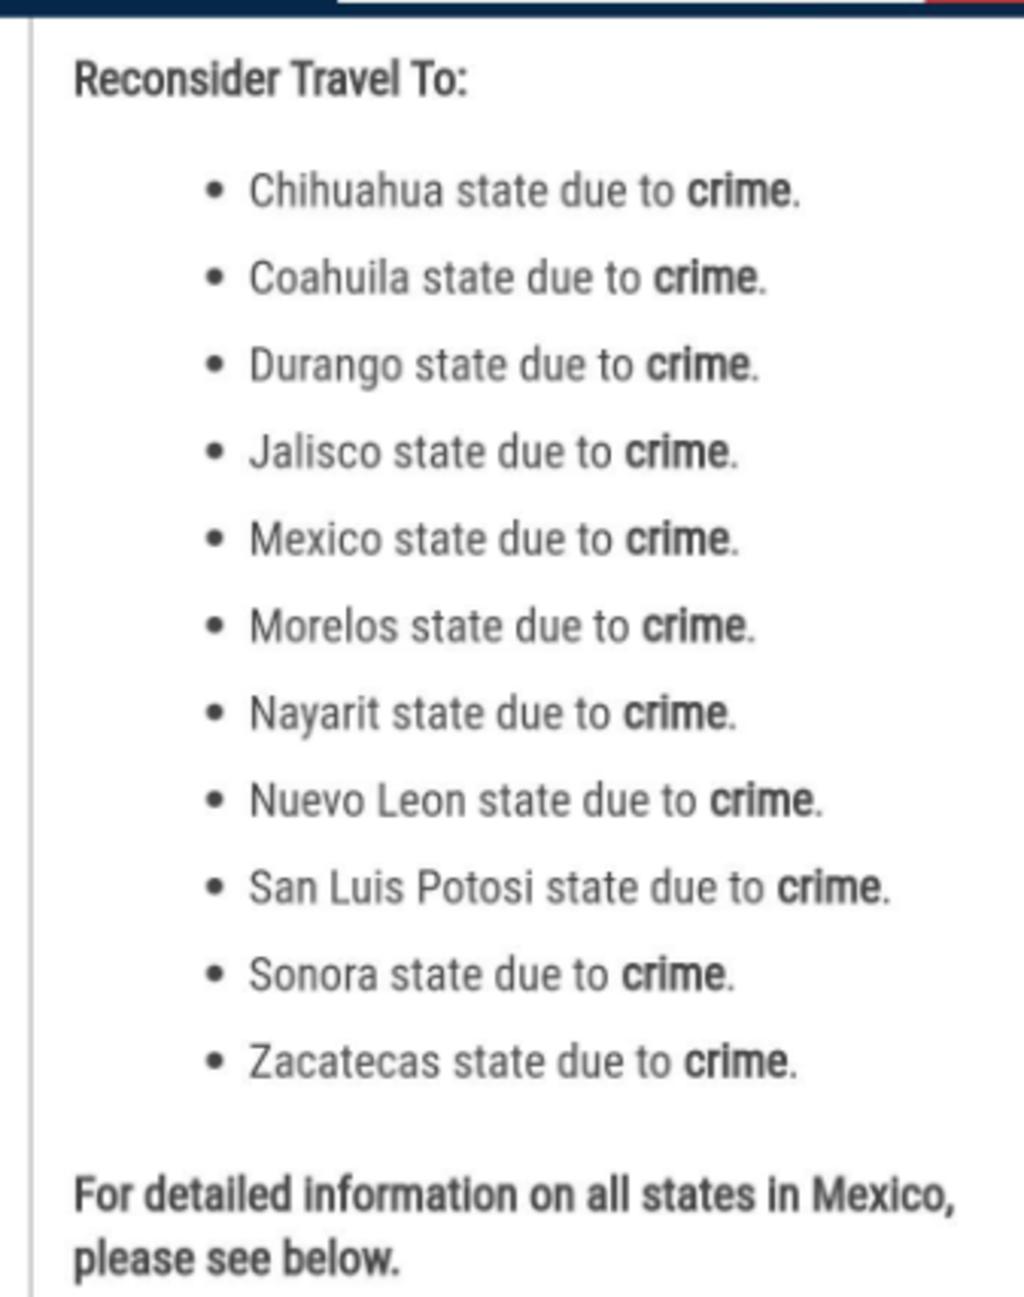 Alerta EU reconsiderar viajar a Coahuila y Durango